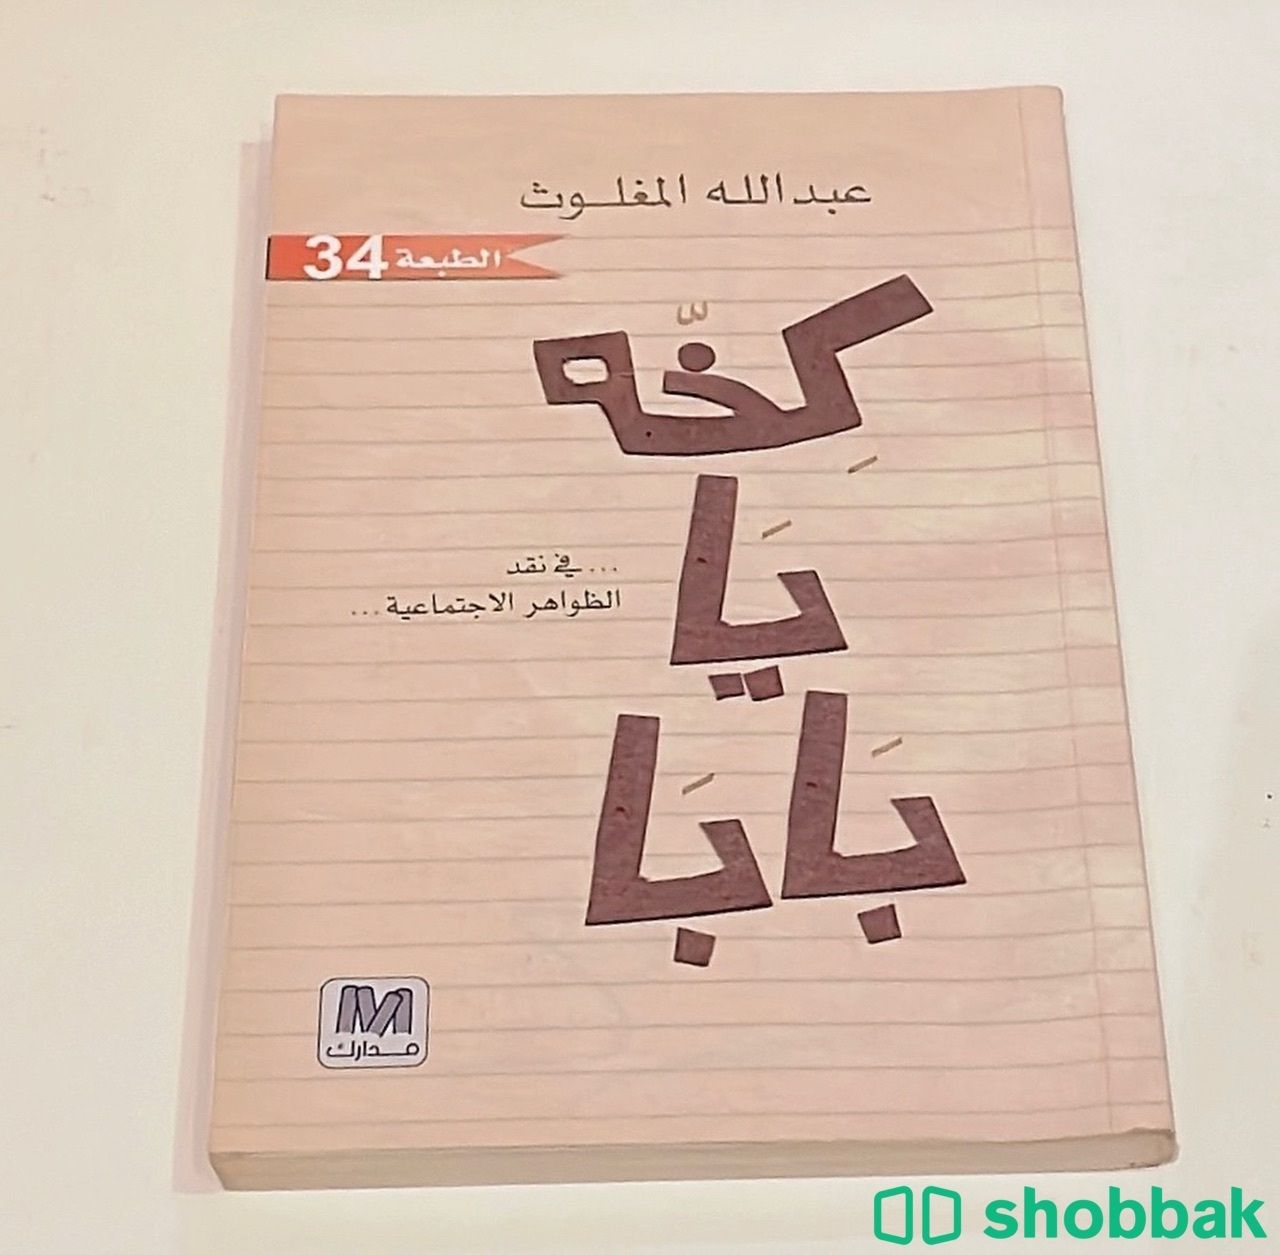 كتاب باللغة العربية. شباك السعودية